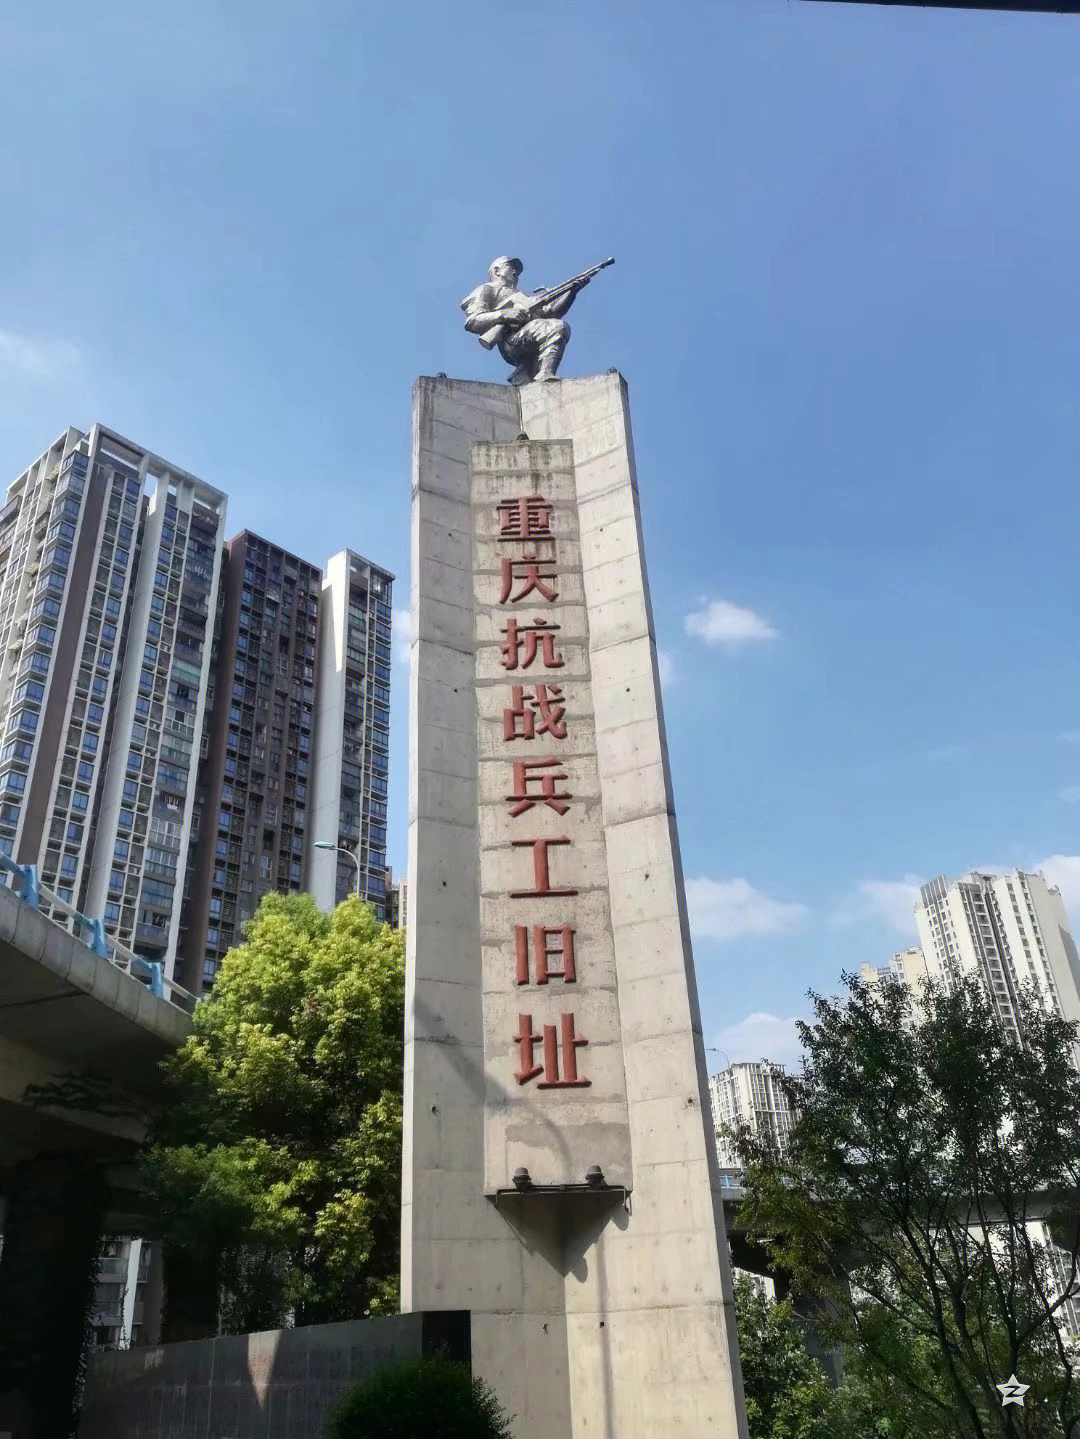 重庆警察博物馆血衣图片